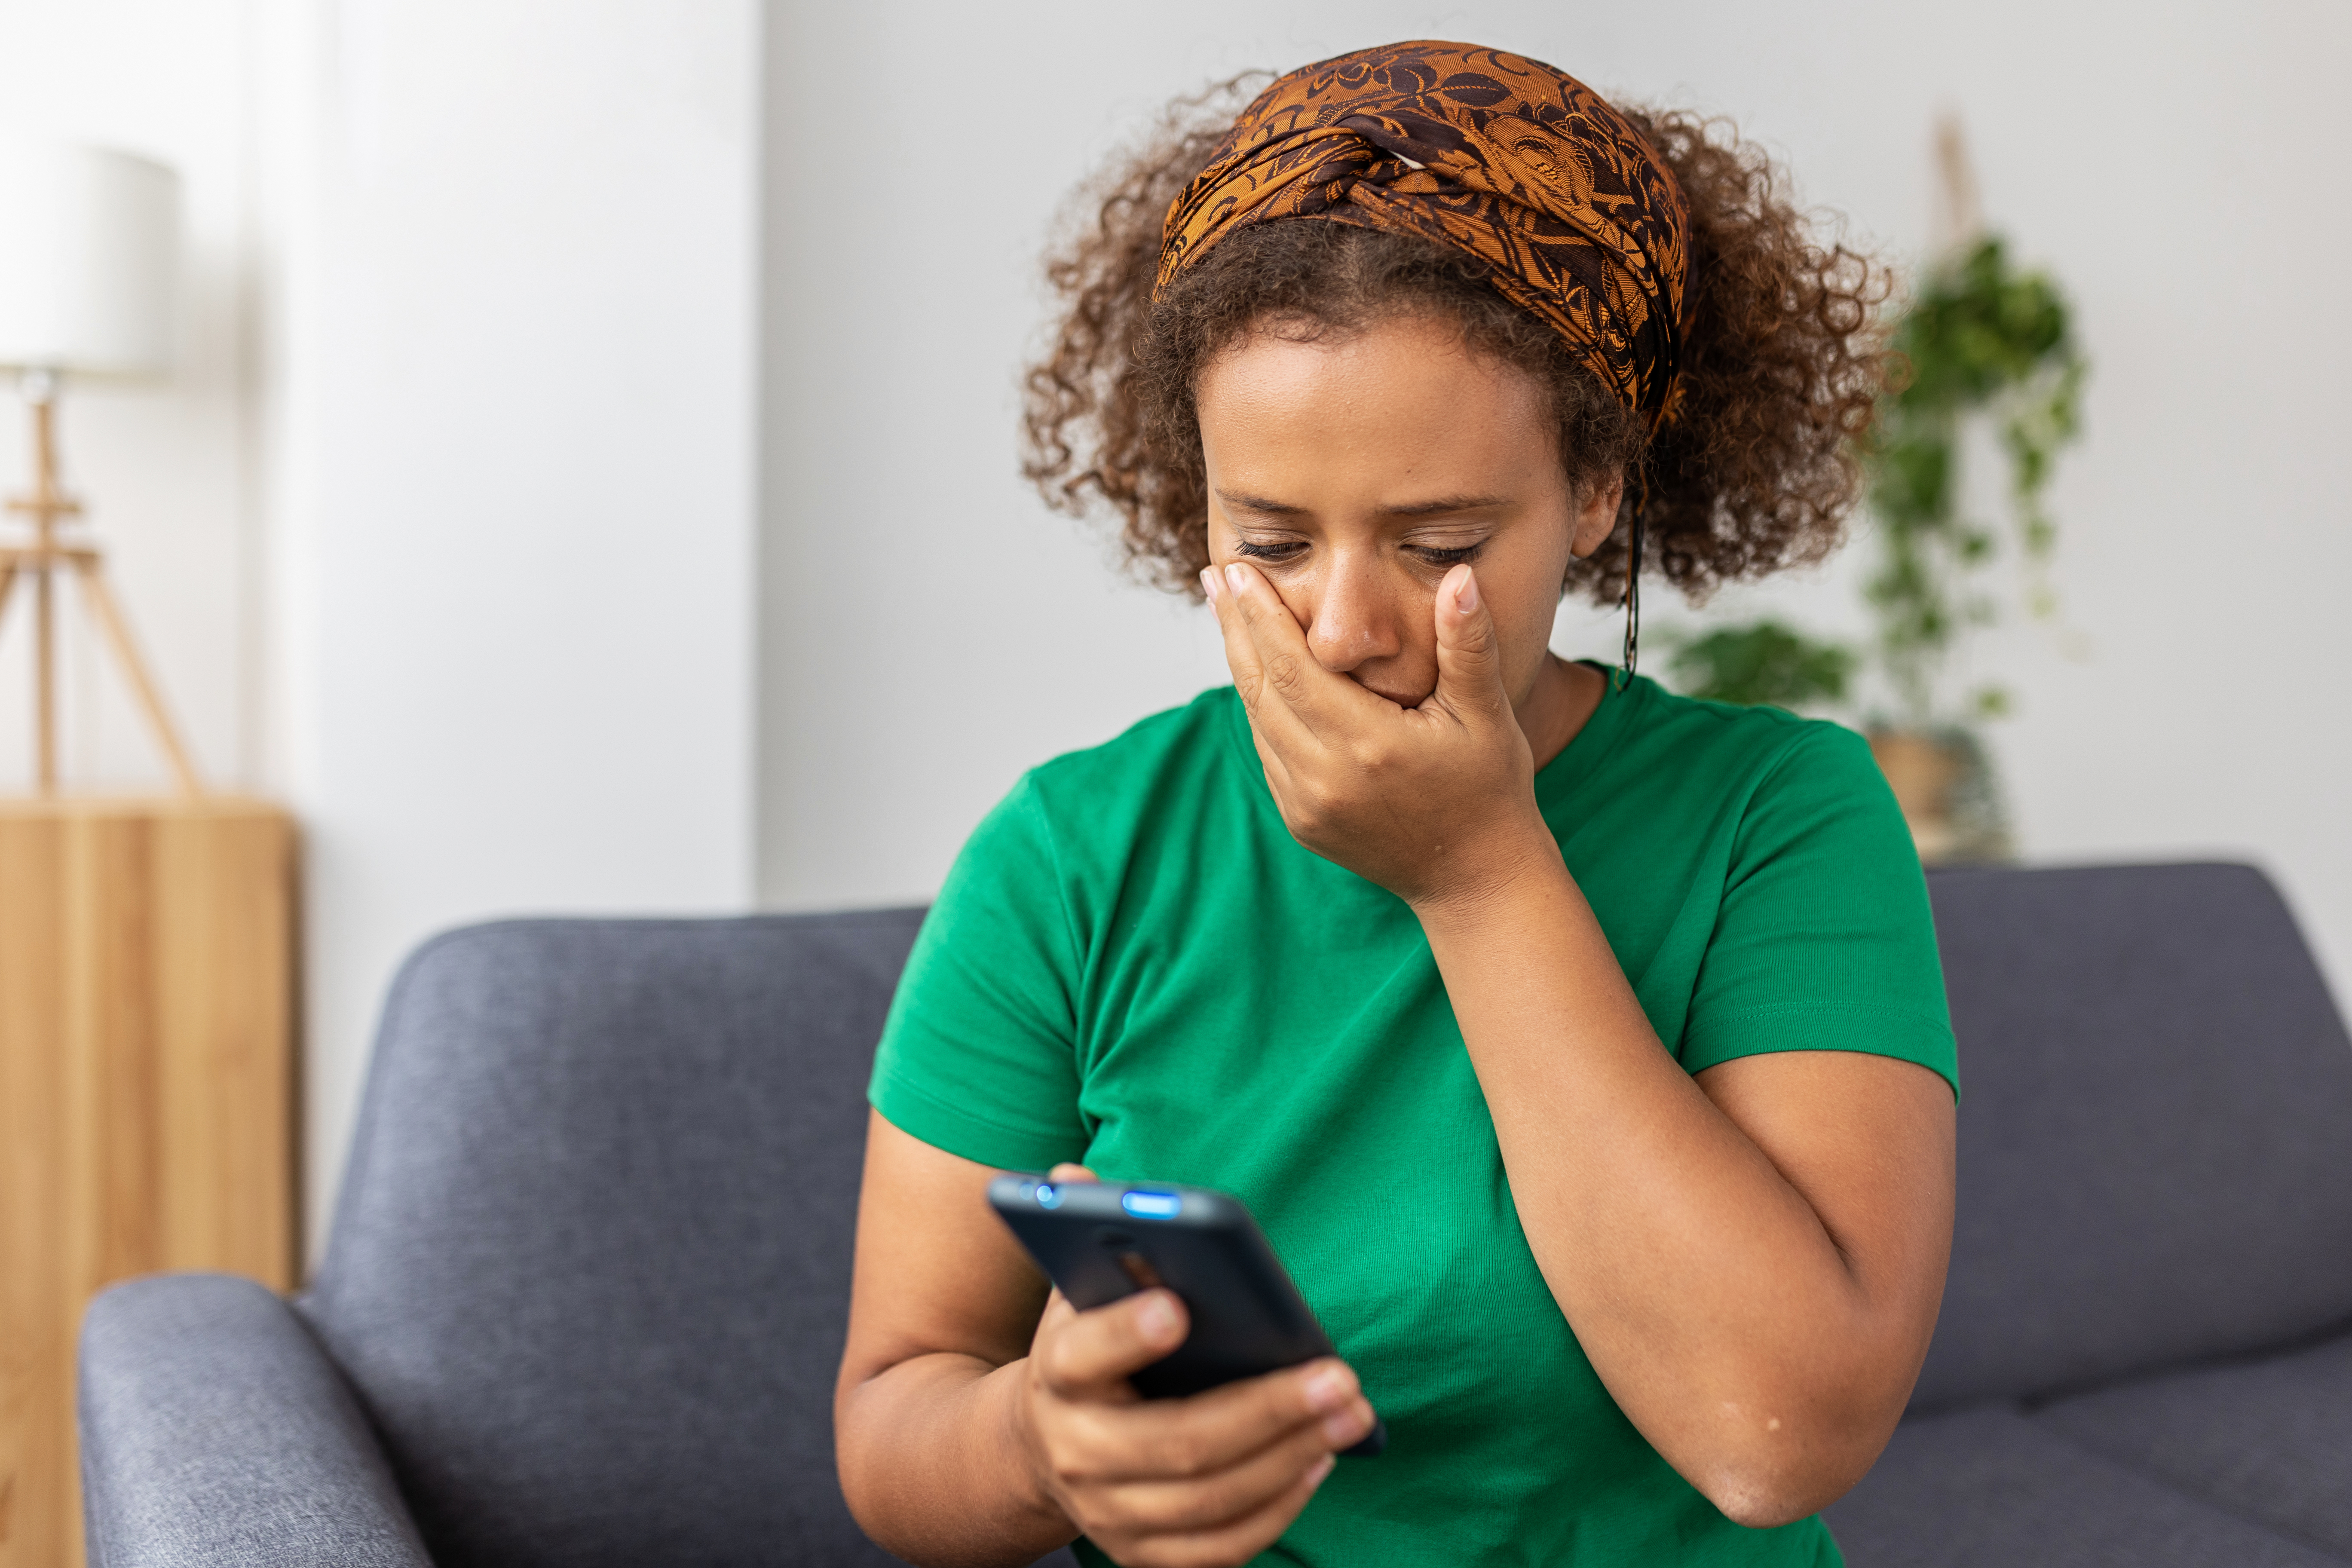 Femme désemparée regardant son téléphone avec incrédulité | Source : Getty Images